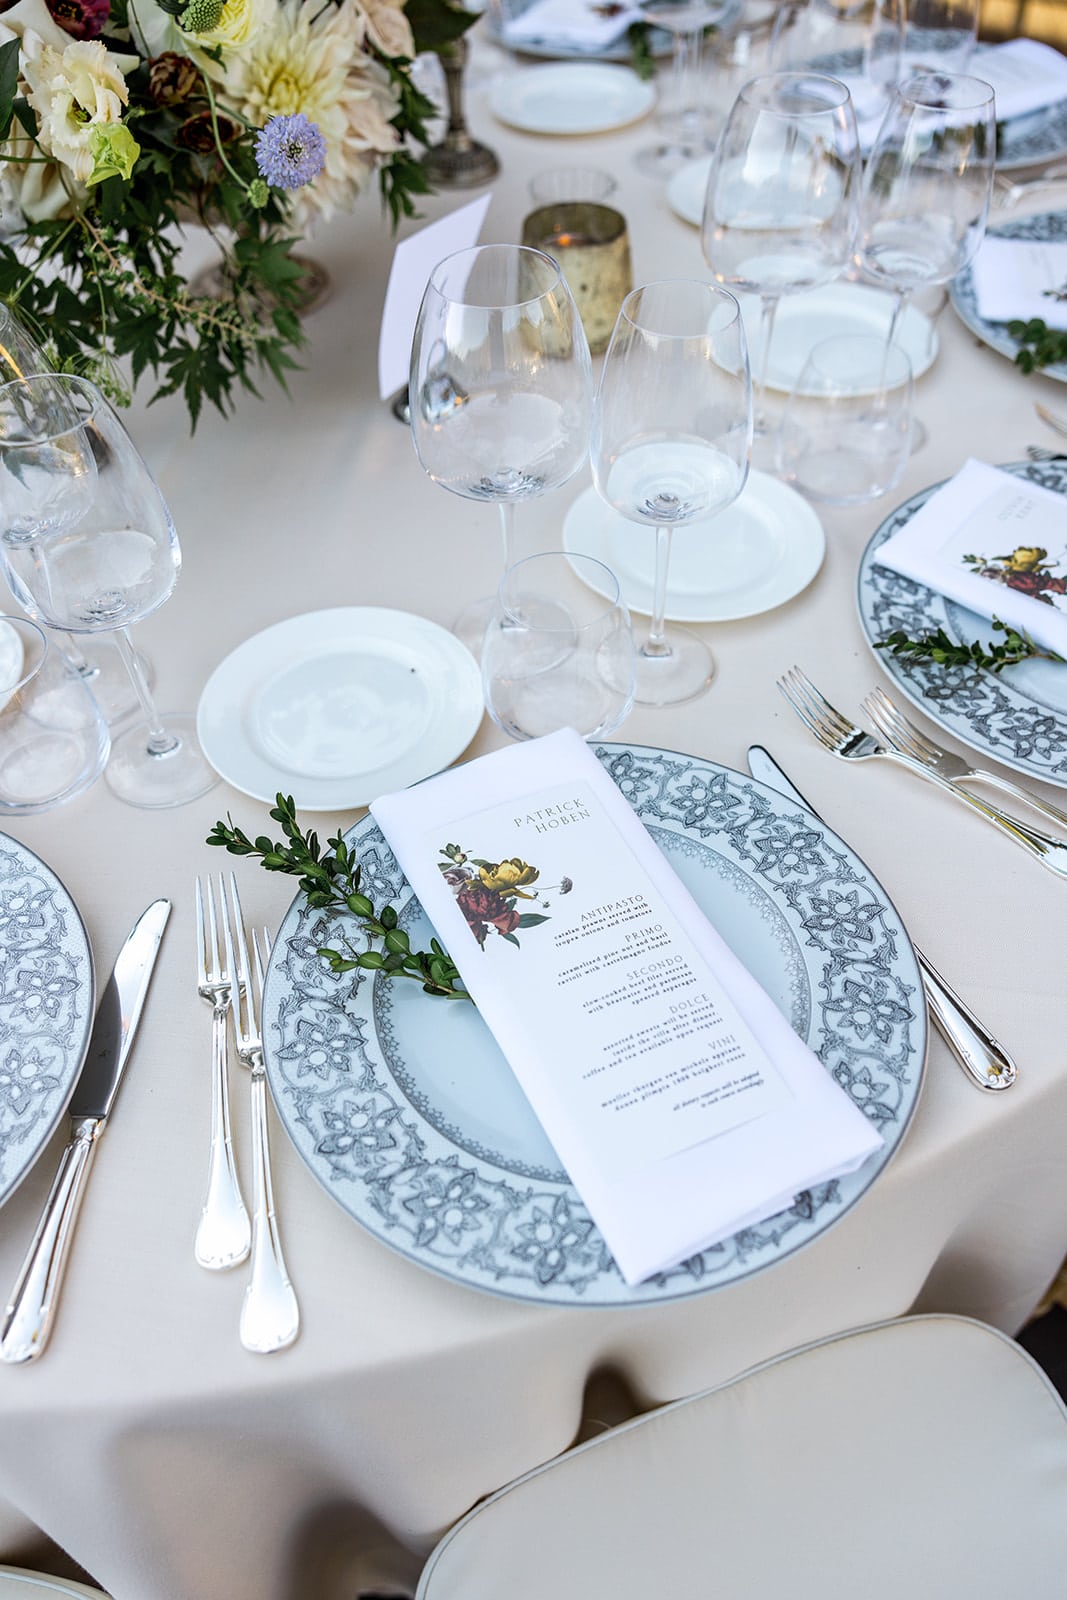 Romantic reception table decor details